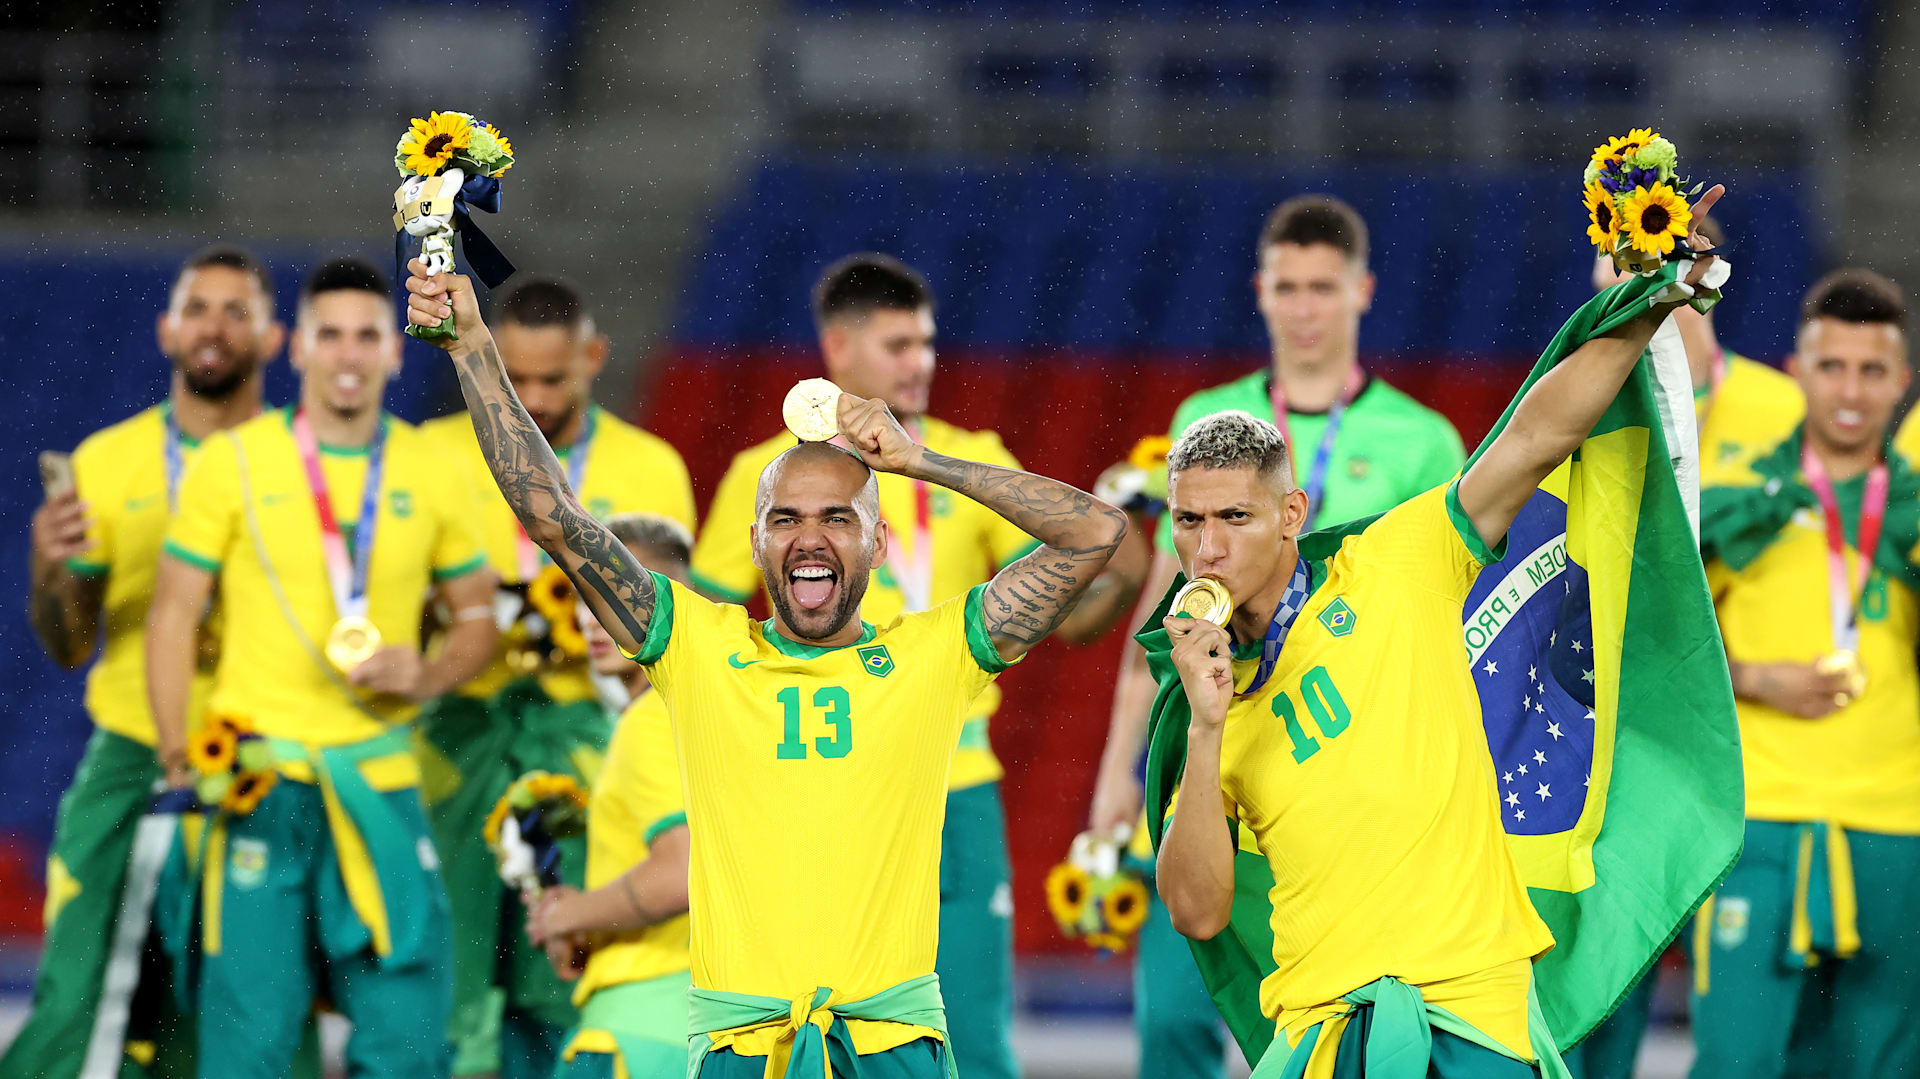 Brasil e França estabelecem recorde de número de pontos em um jogo nas  Olimpíadas, olimpíadas